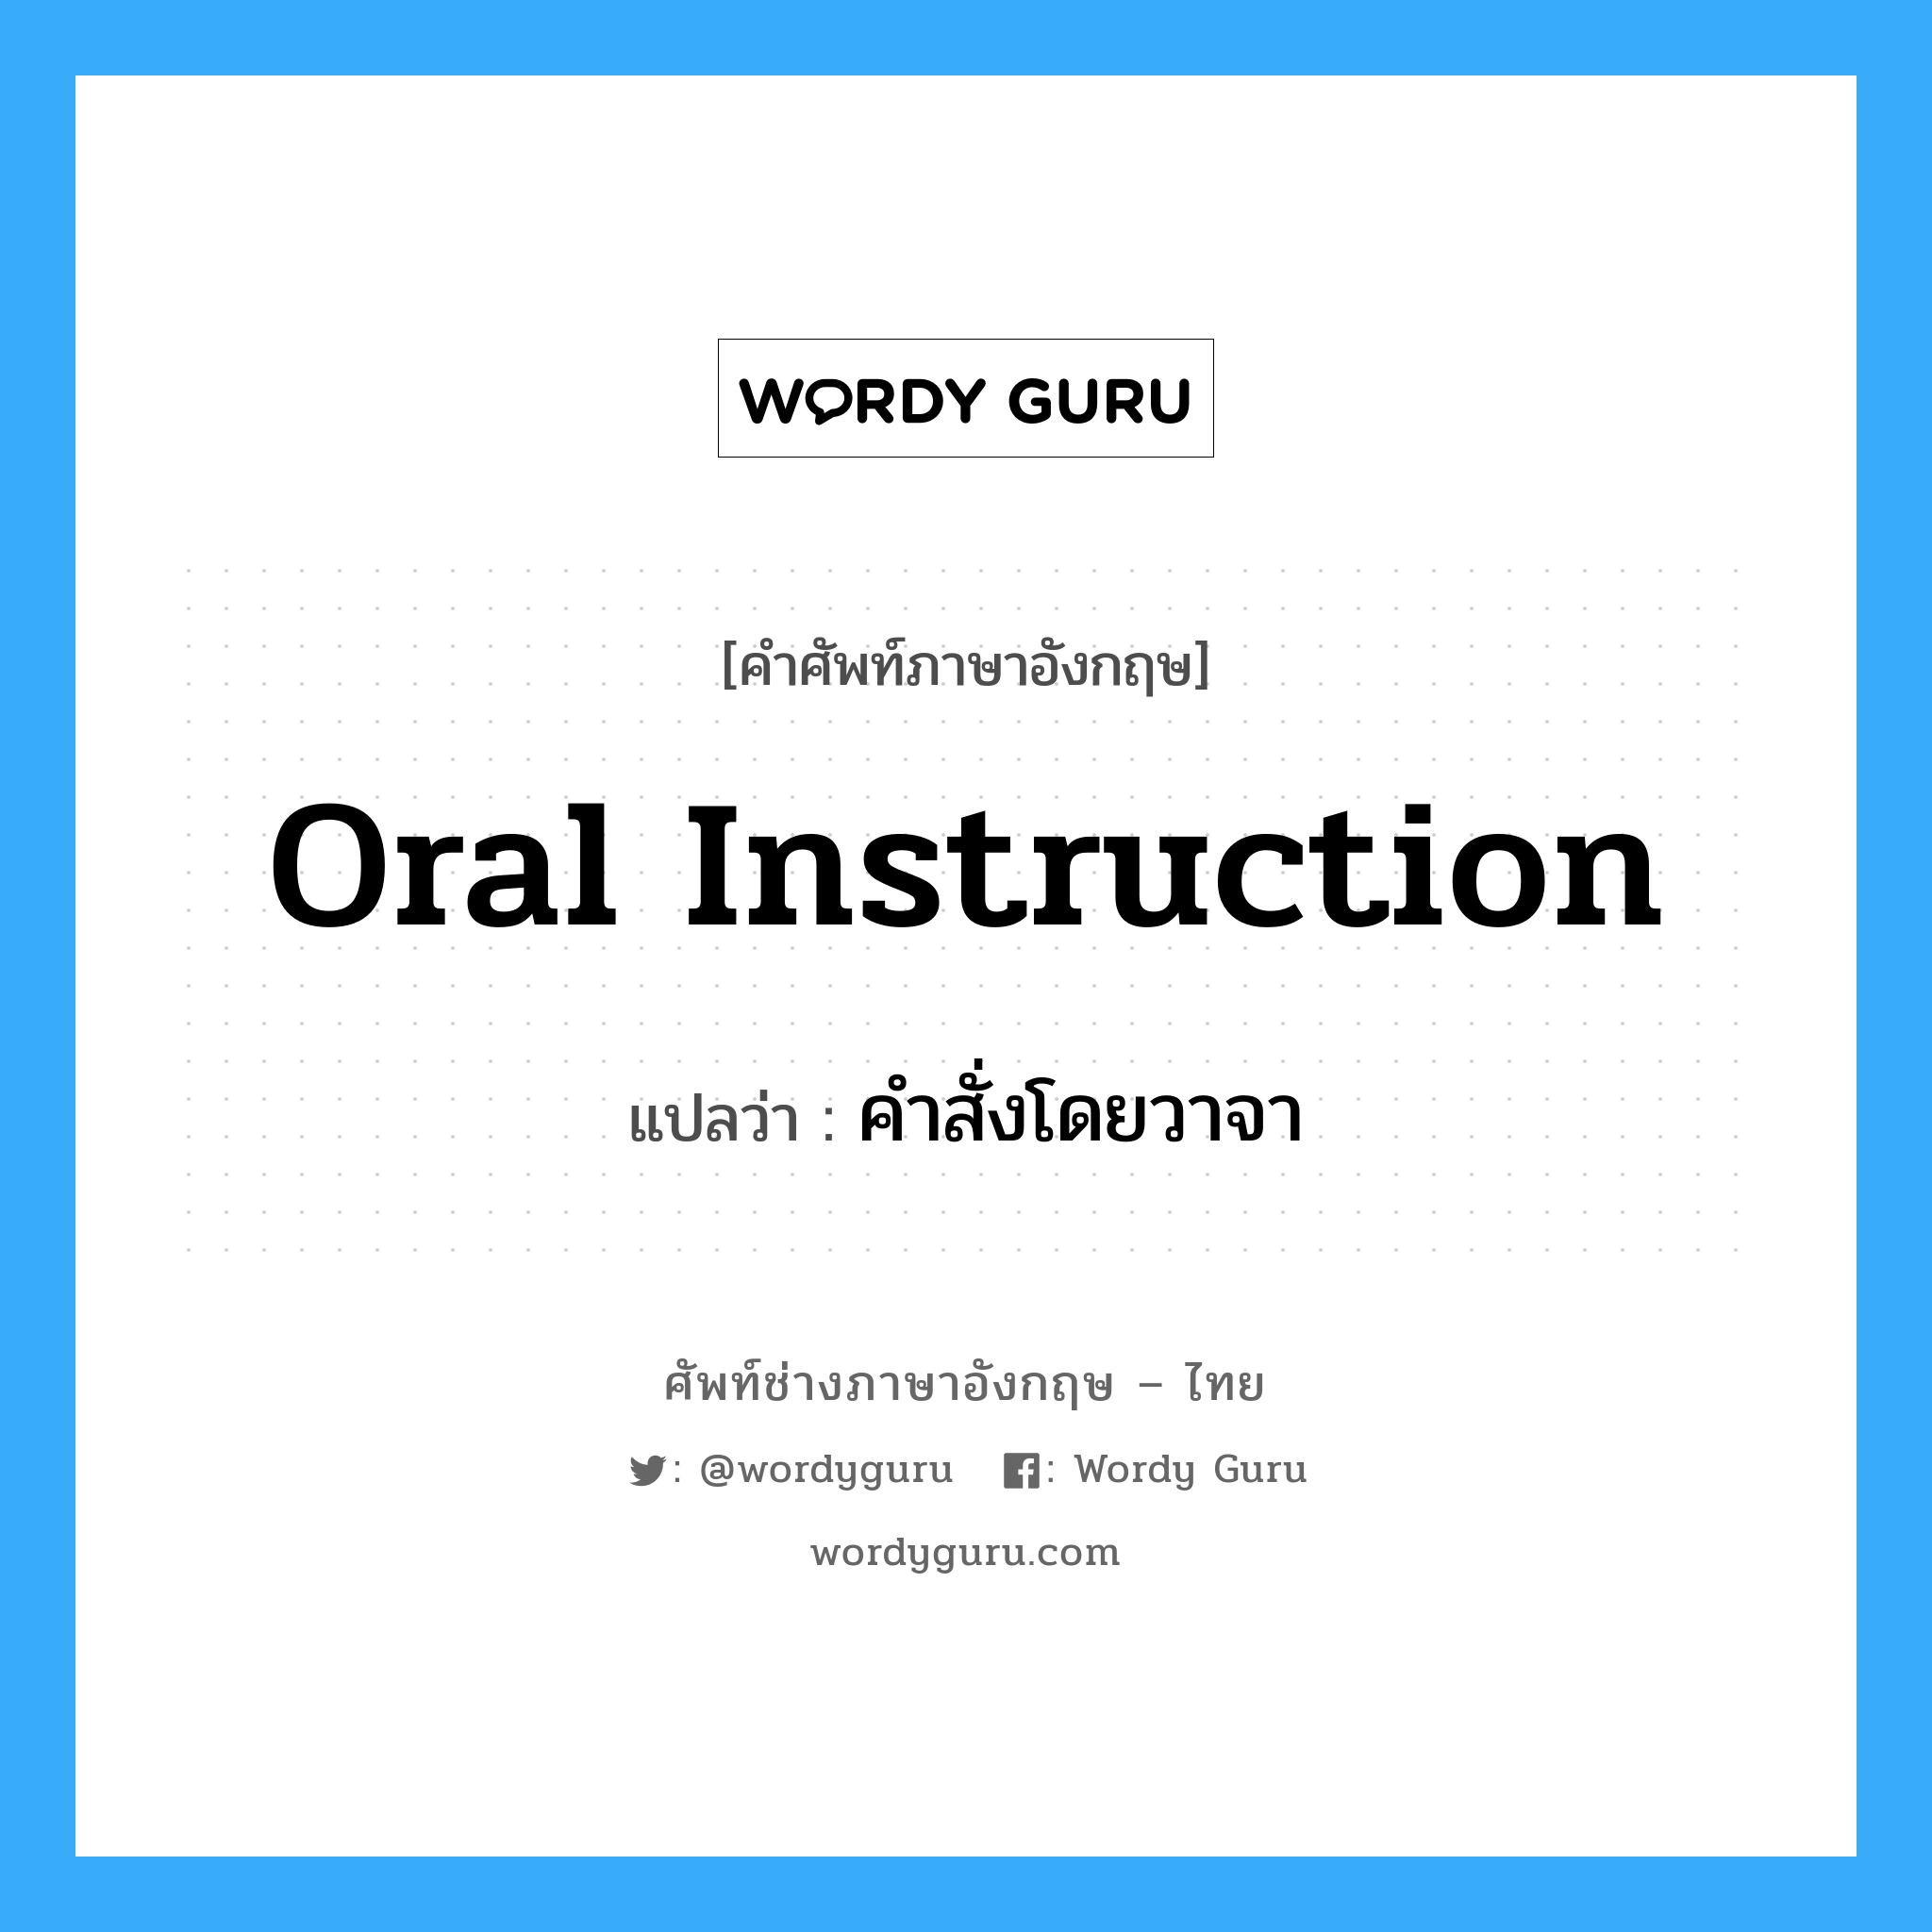 คำสั่งโดยวาจา ภาษาอังกฤษ?, คำศัพท์ช่างภาษาอังกฤษ - ไทย คำสั่งโดยวาจา คำศัพท์ภาษาอังกฤษ คำสั่งโดยวาจา แปลว่า Oral instruction